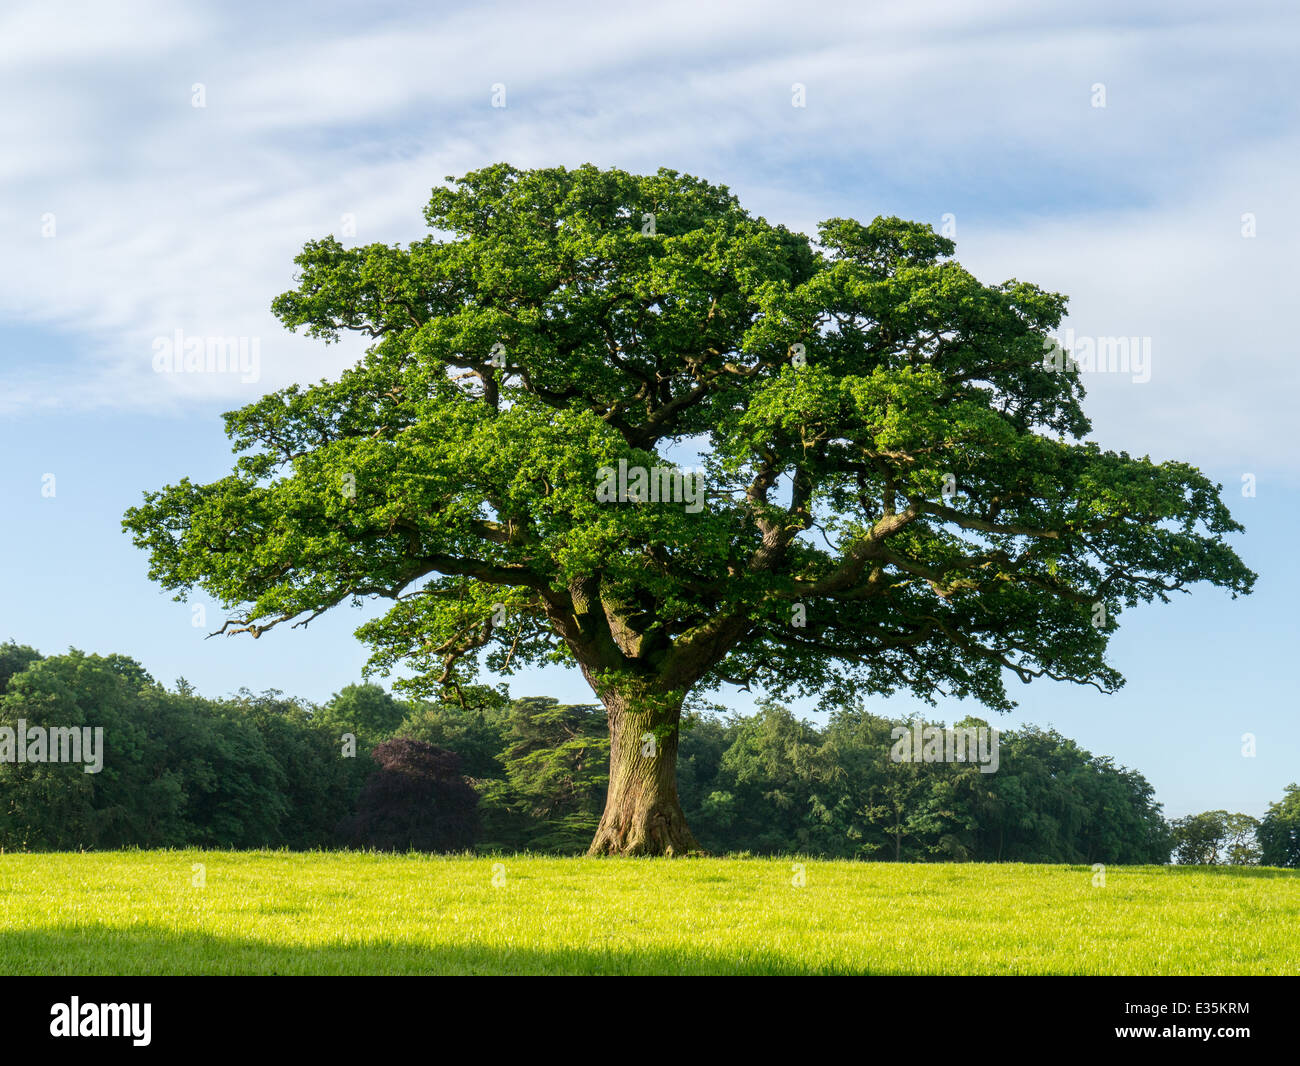 oak tree in field Stock Photo